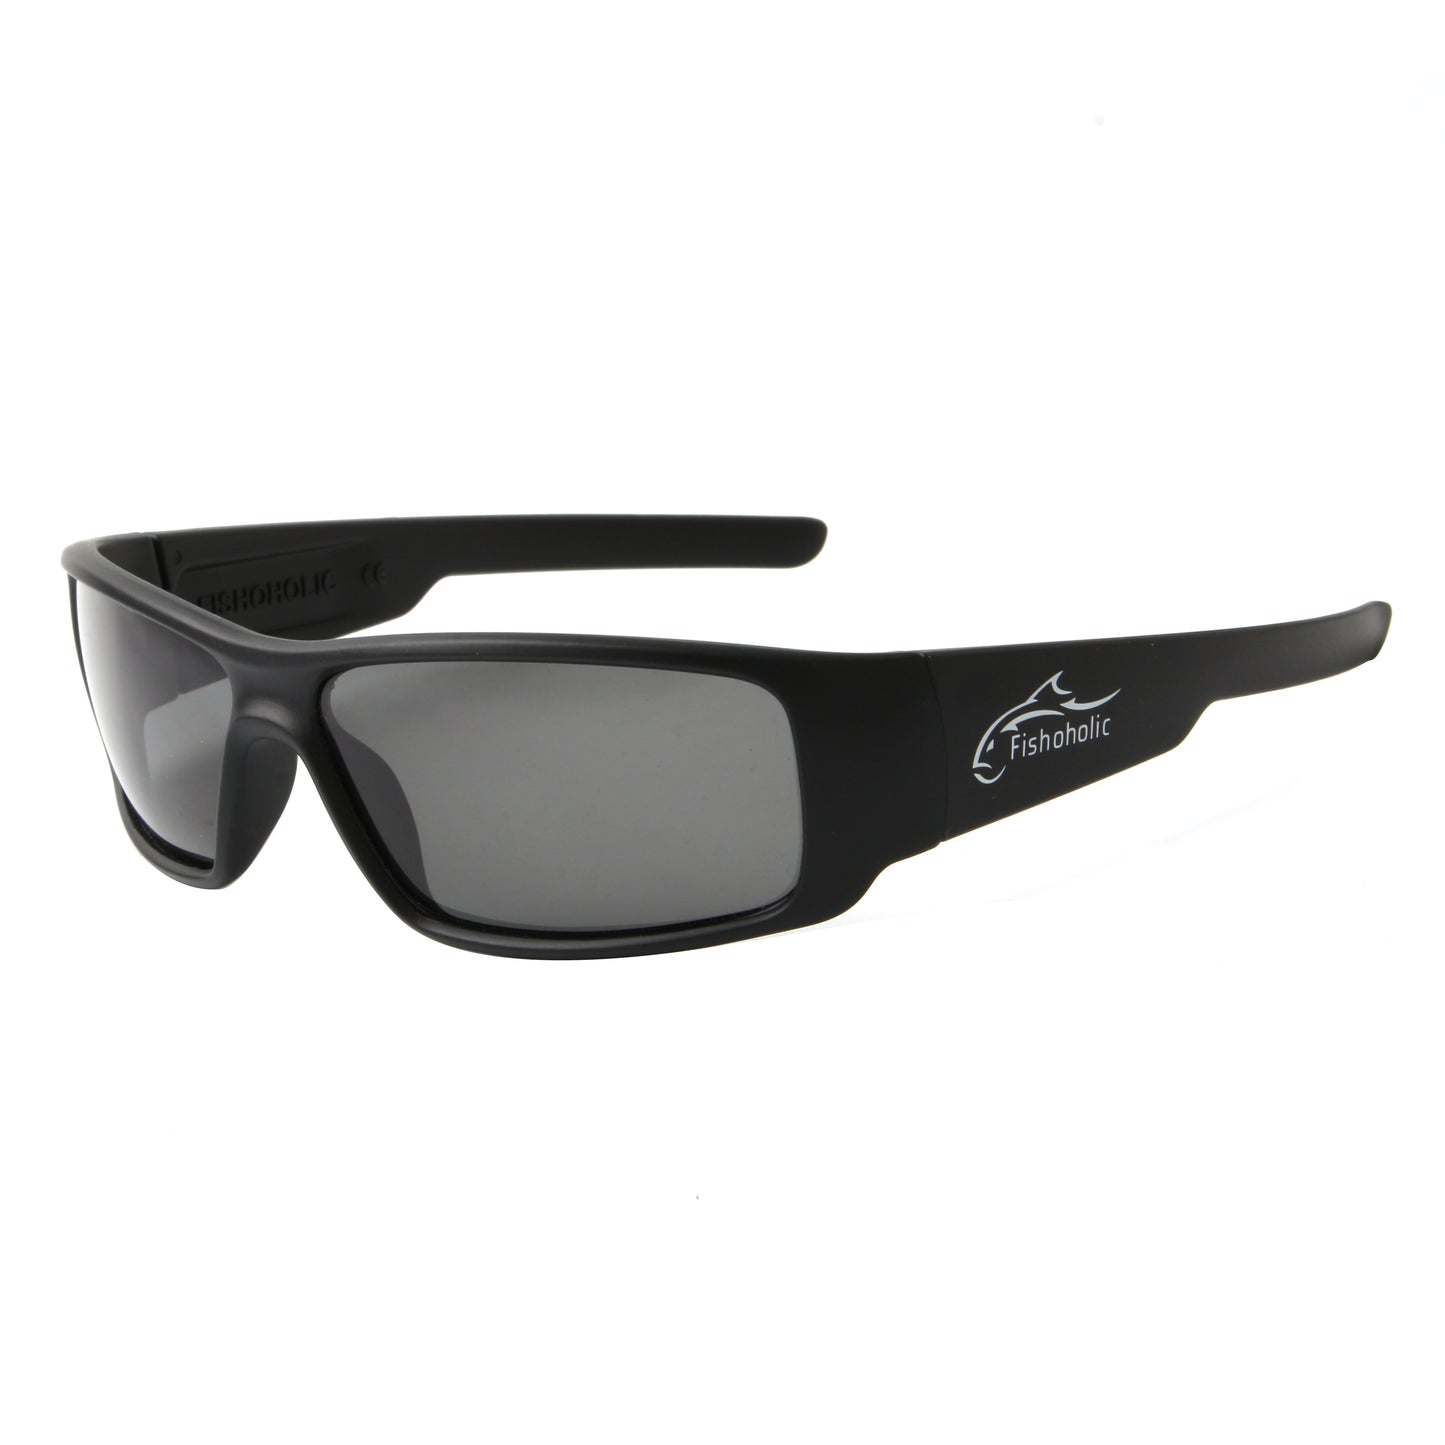 Fishoholic Polarized Fishing Sunglasses - UV400 - Free Hard Case